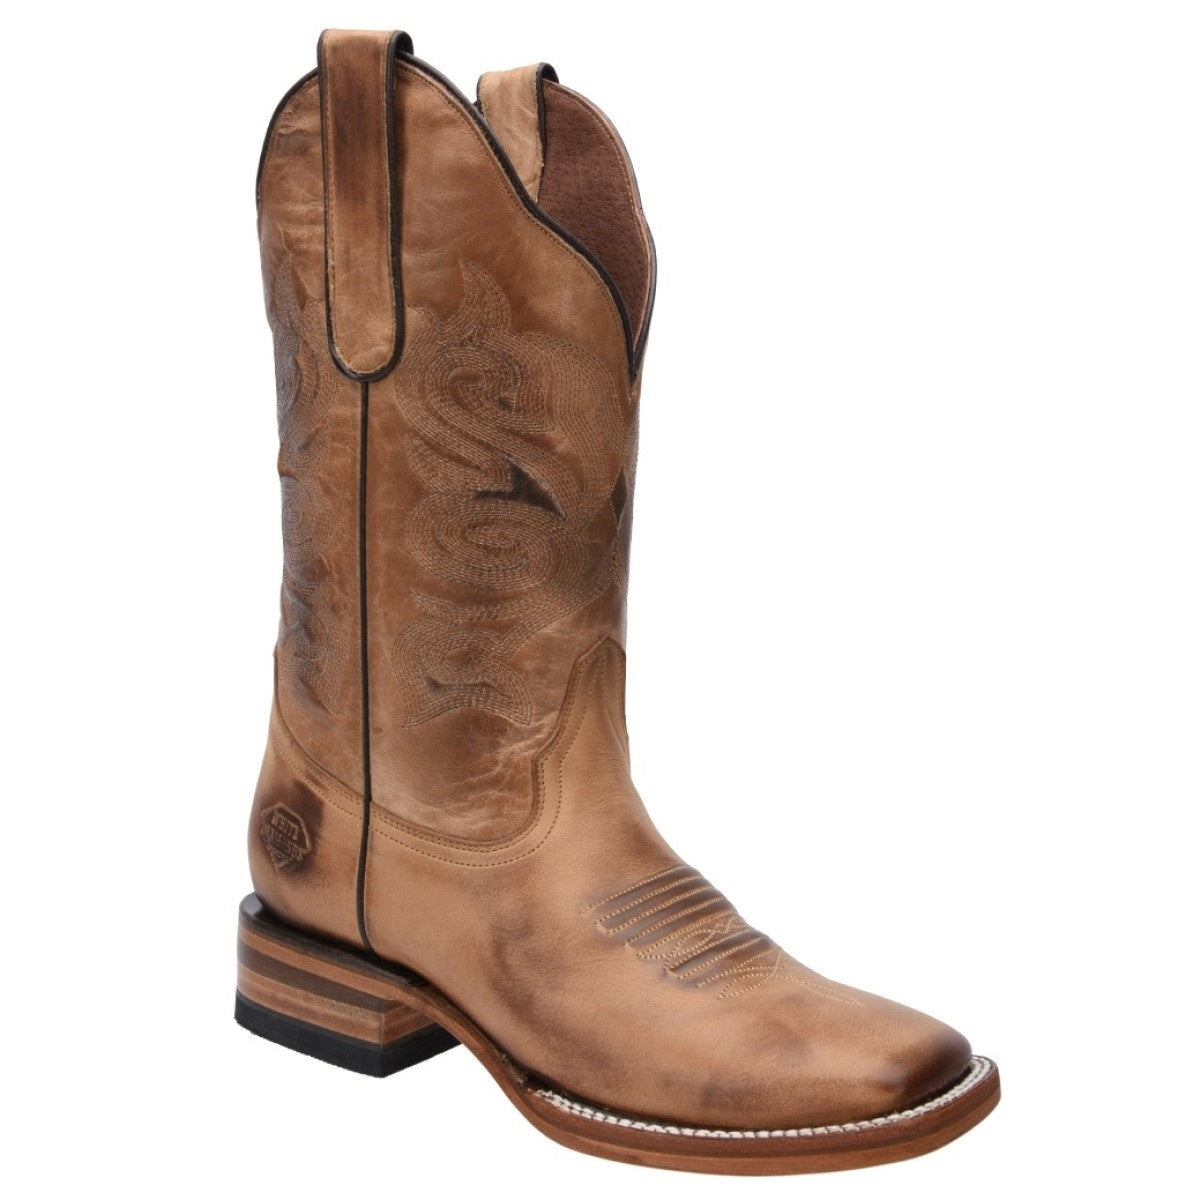 Botas Vaqueras TM-WD0530 - Western Boots